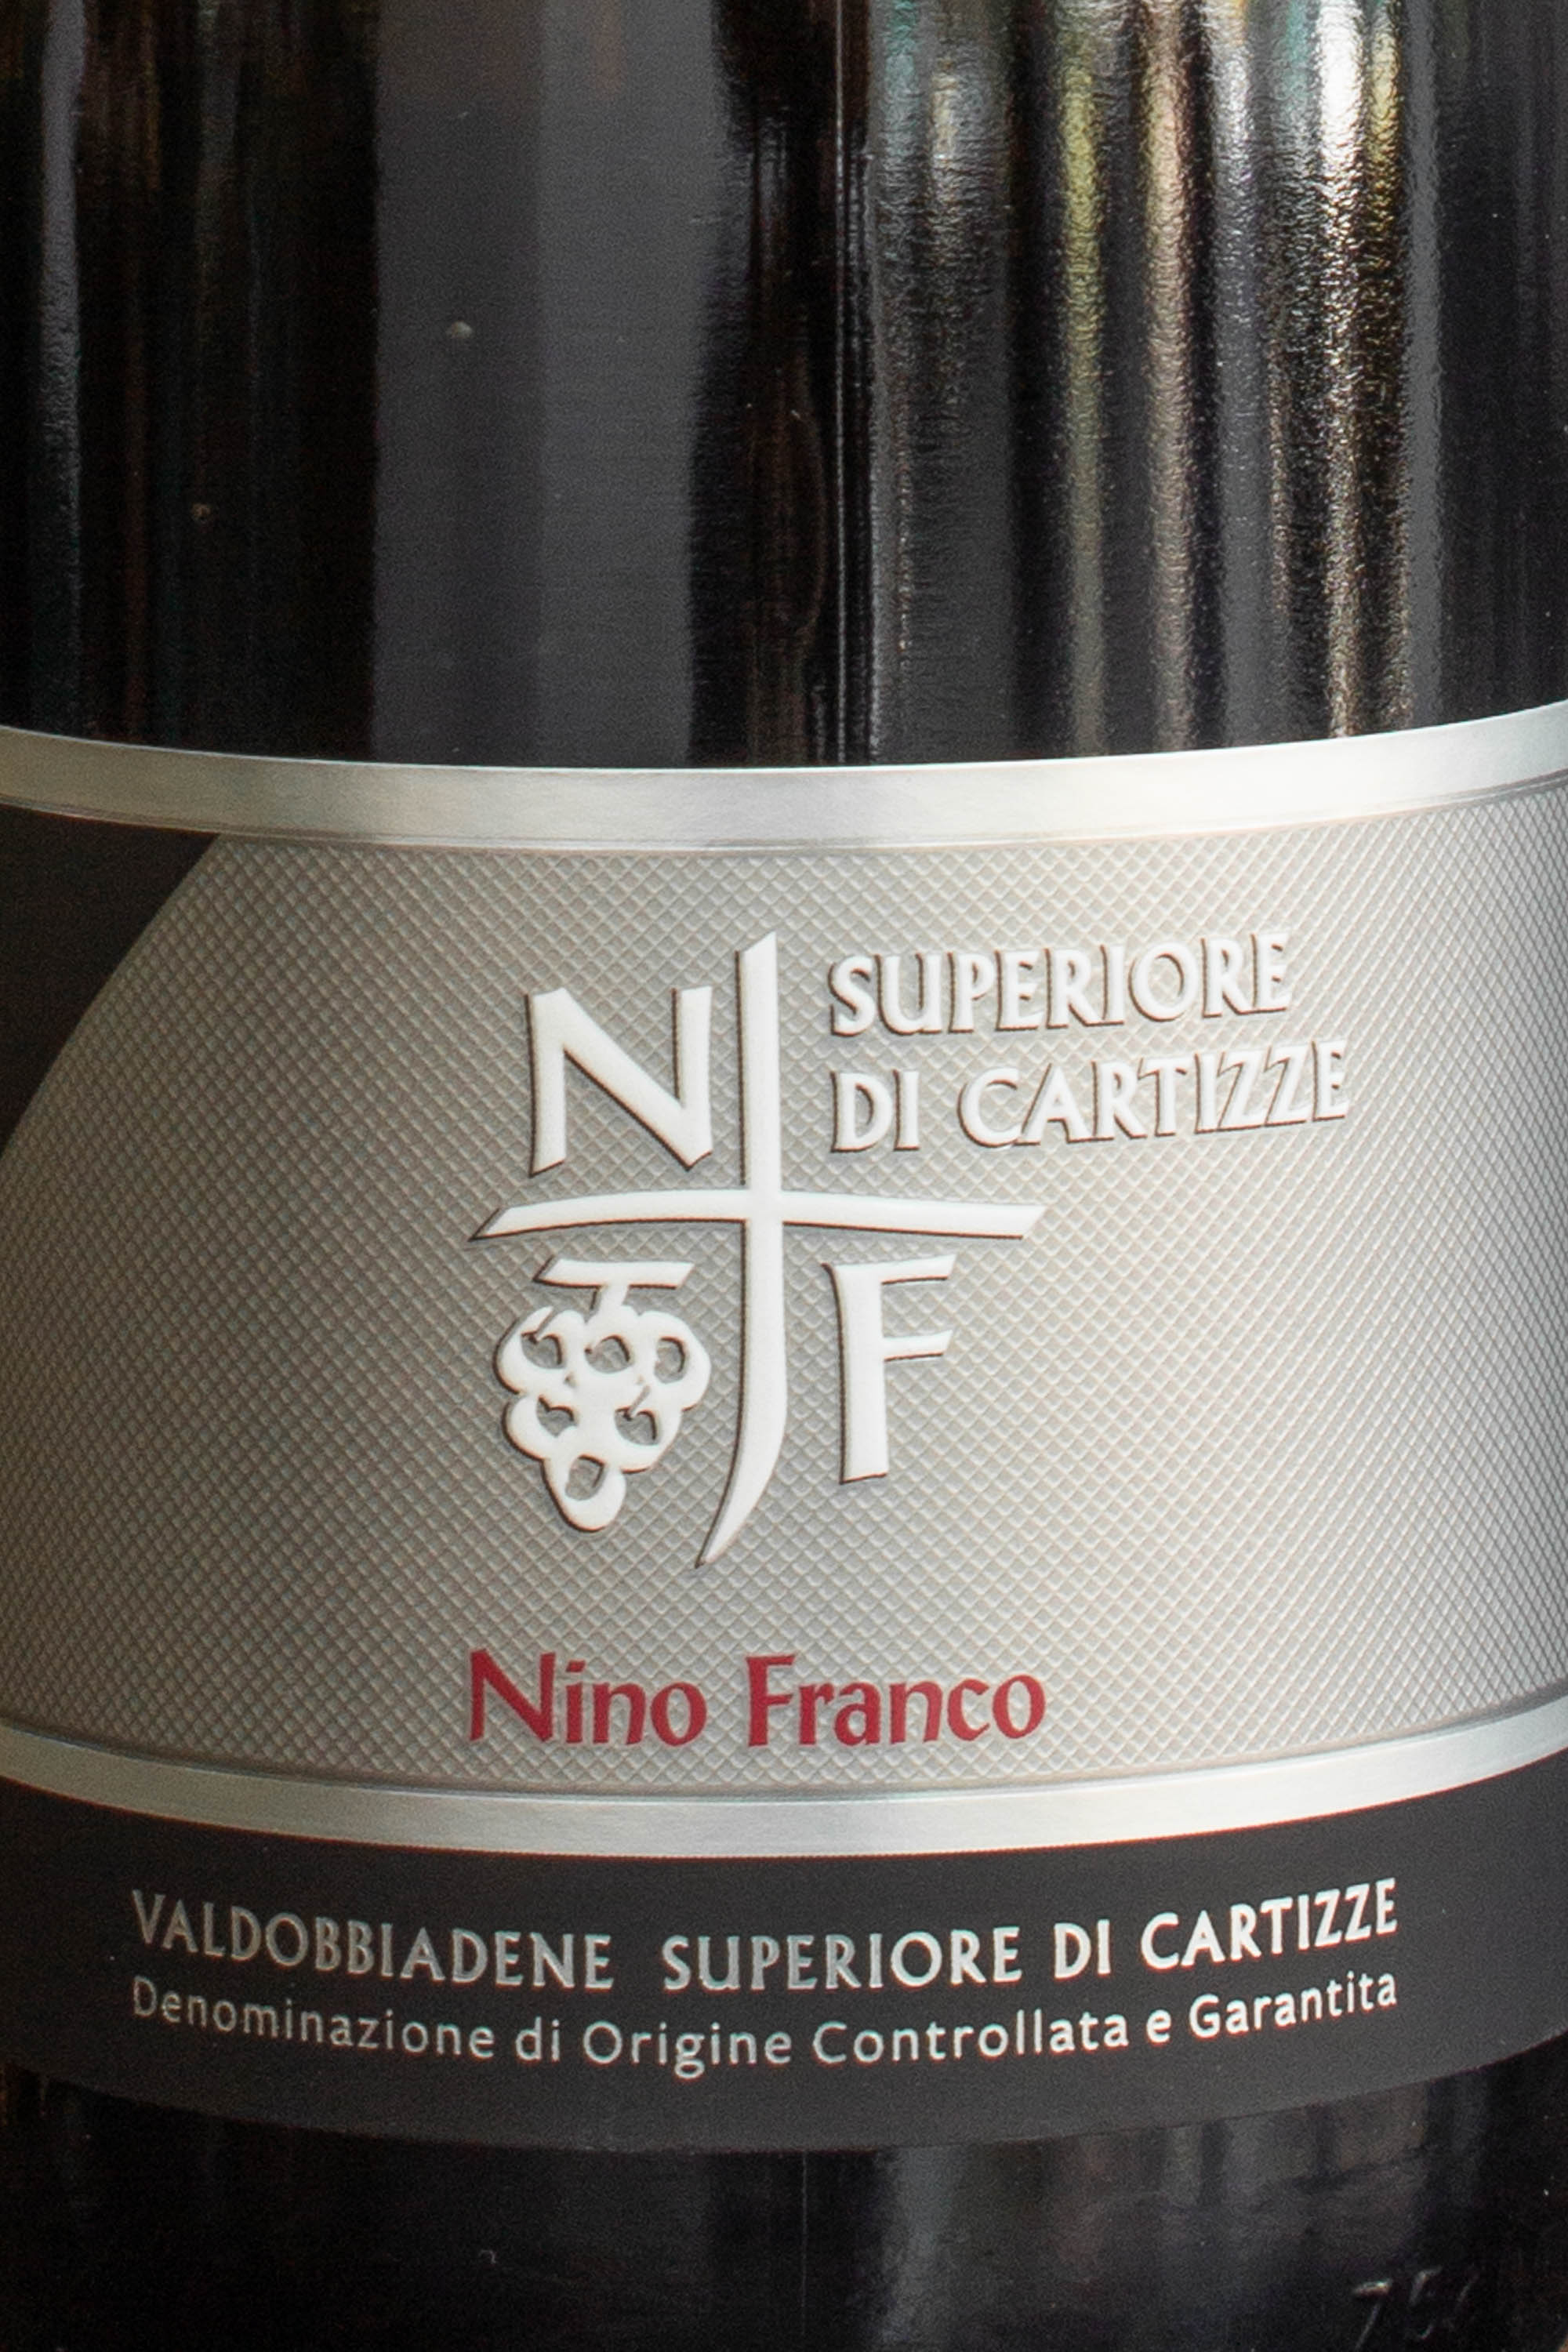 Игристое вино Nino Franco Prosecco Valdobbiadene Superiore di Cartizze DOCG 2020 / Нино Франко Просекко Вальдобьядене Супериоре ди Картице 2020